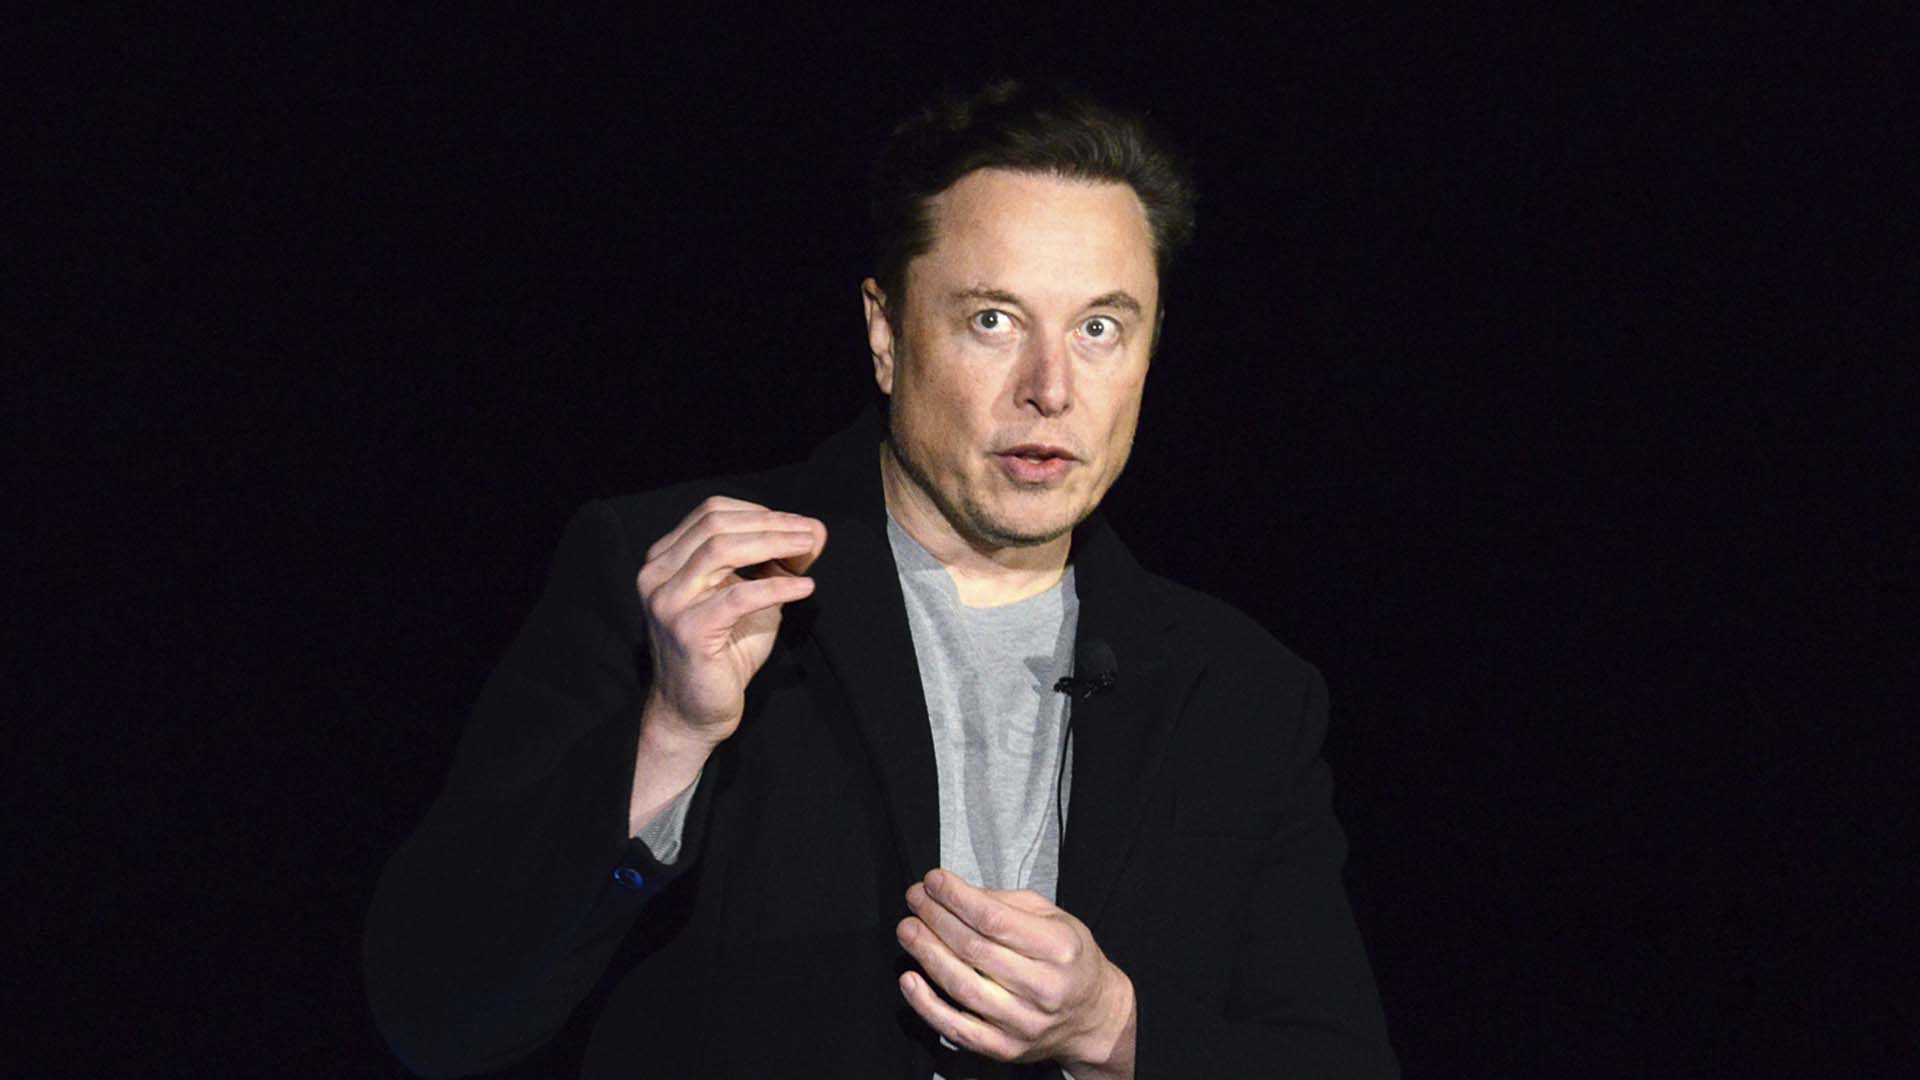 La semaine dernière, Elon Musk (photo) a indiqué qu’il avait déniché 46,5 milliards de dollars américains (59,3 milliards $ CAD) en financement pour acheter Twitter.